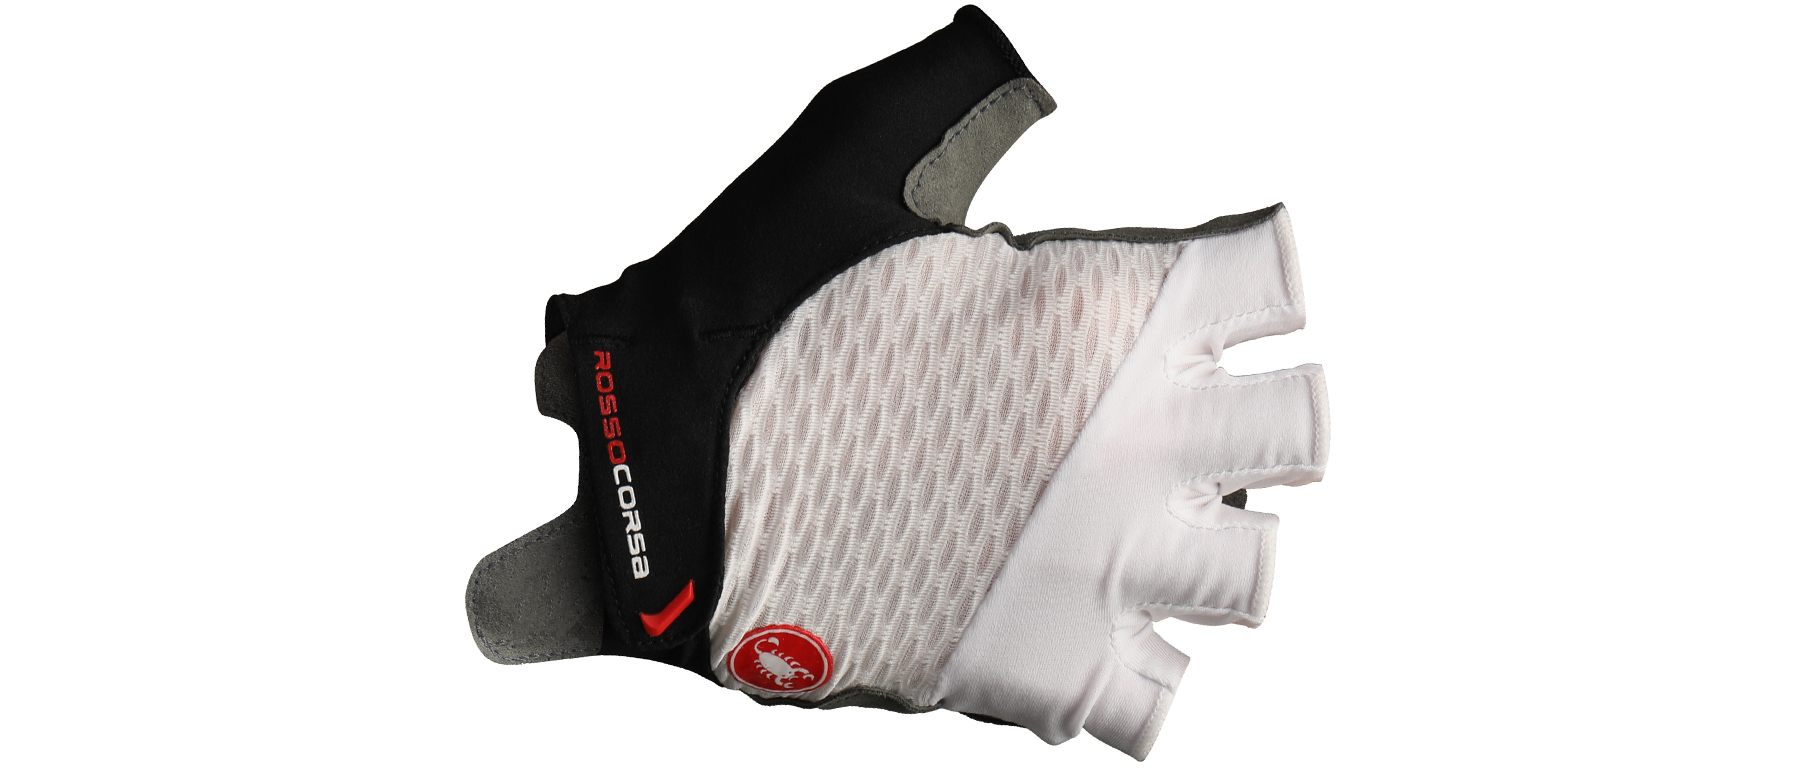 Castelli Rosso Corsa 2 W Glove